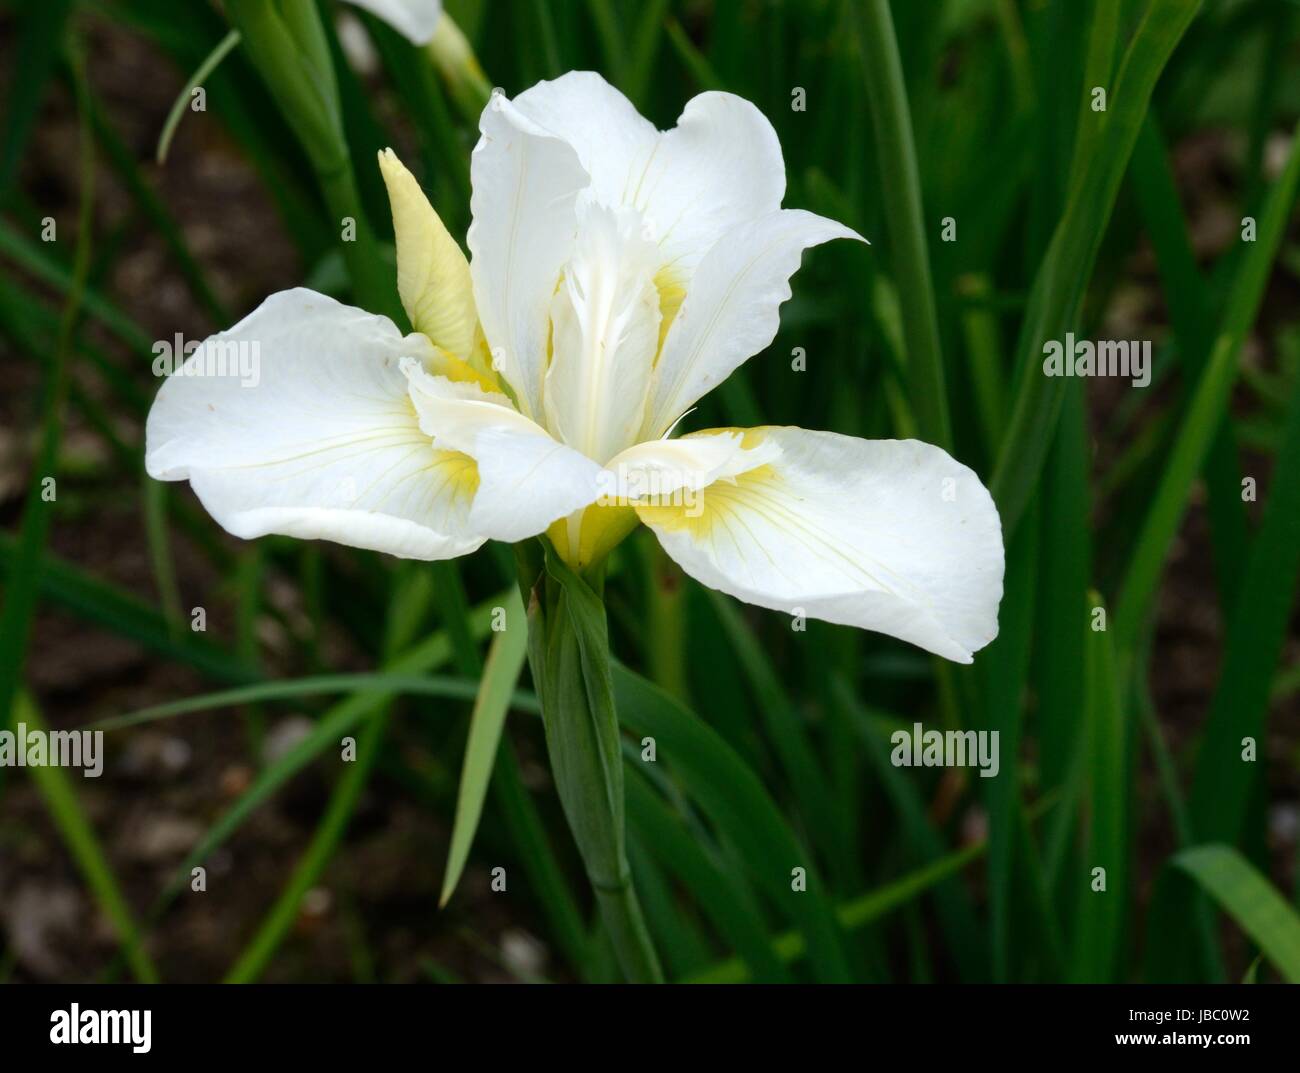 Iris white swirl Siberian iris iris sibirica white flower Stock Photo